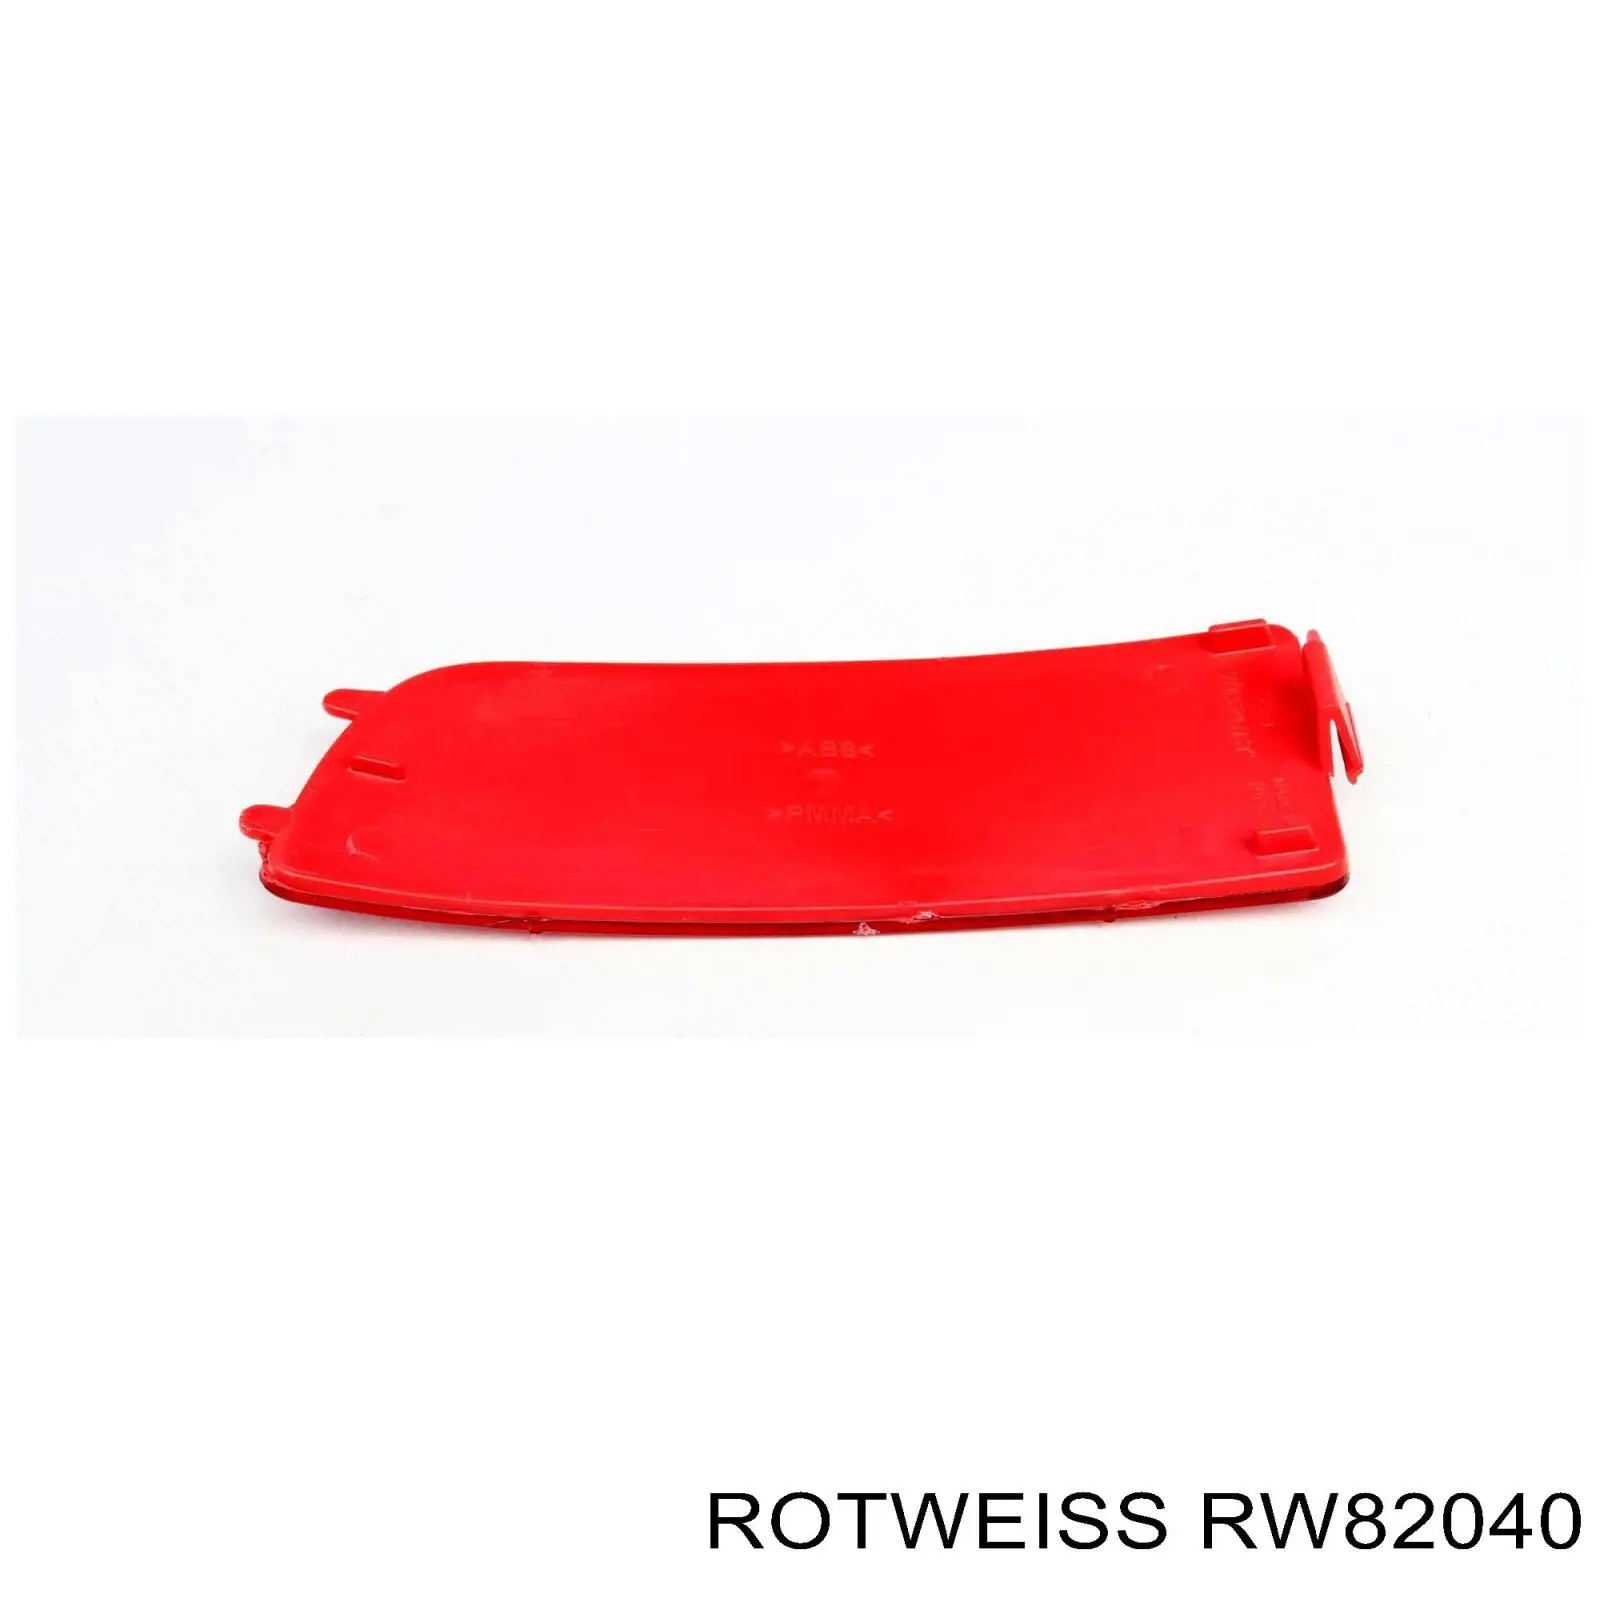 RW82040 Rotweiss retrorrefletor (refletor do pára-choque traseiro esquerdo)